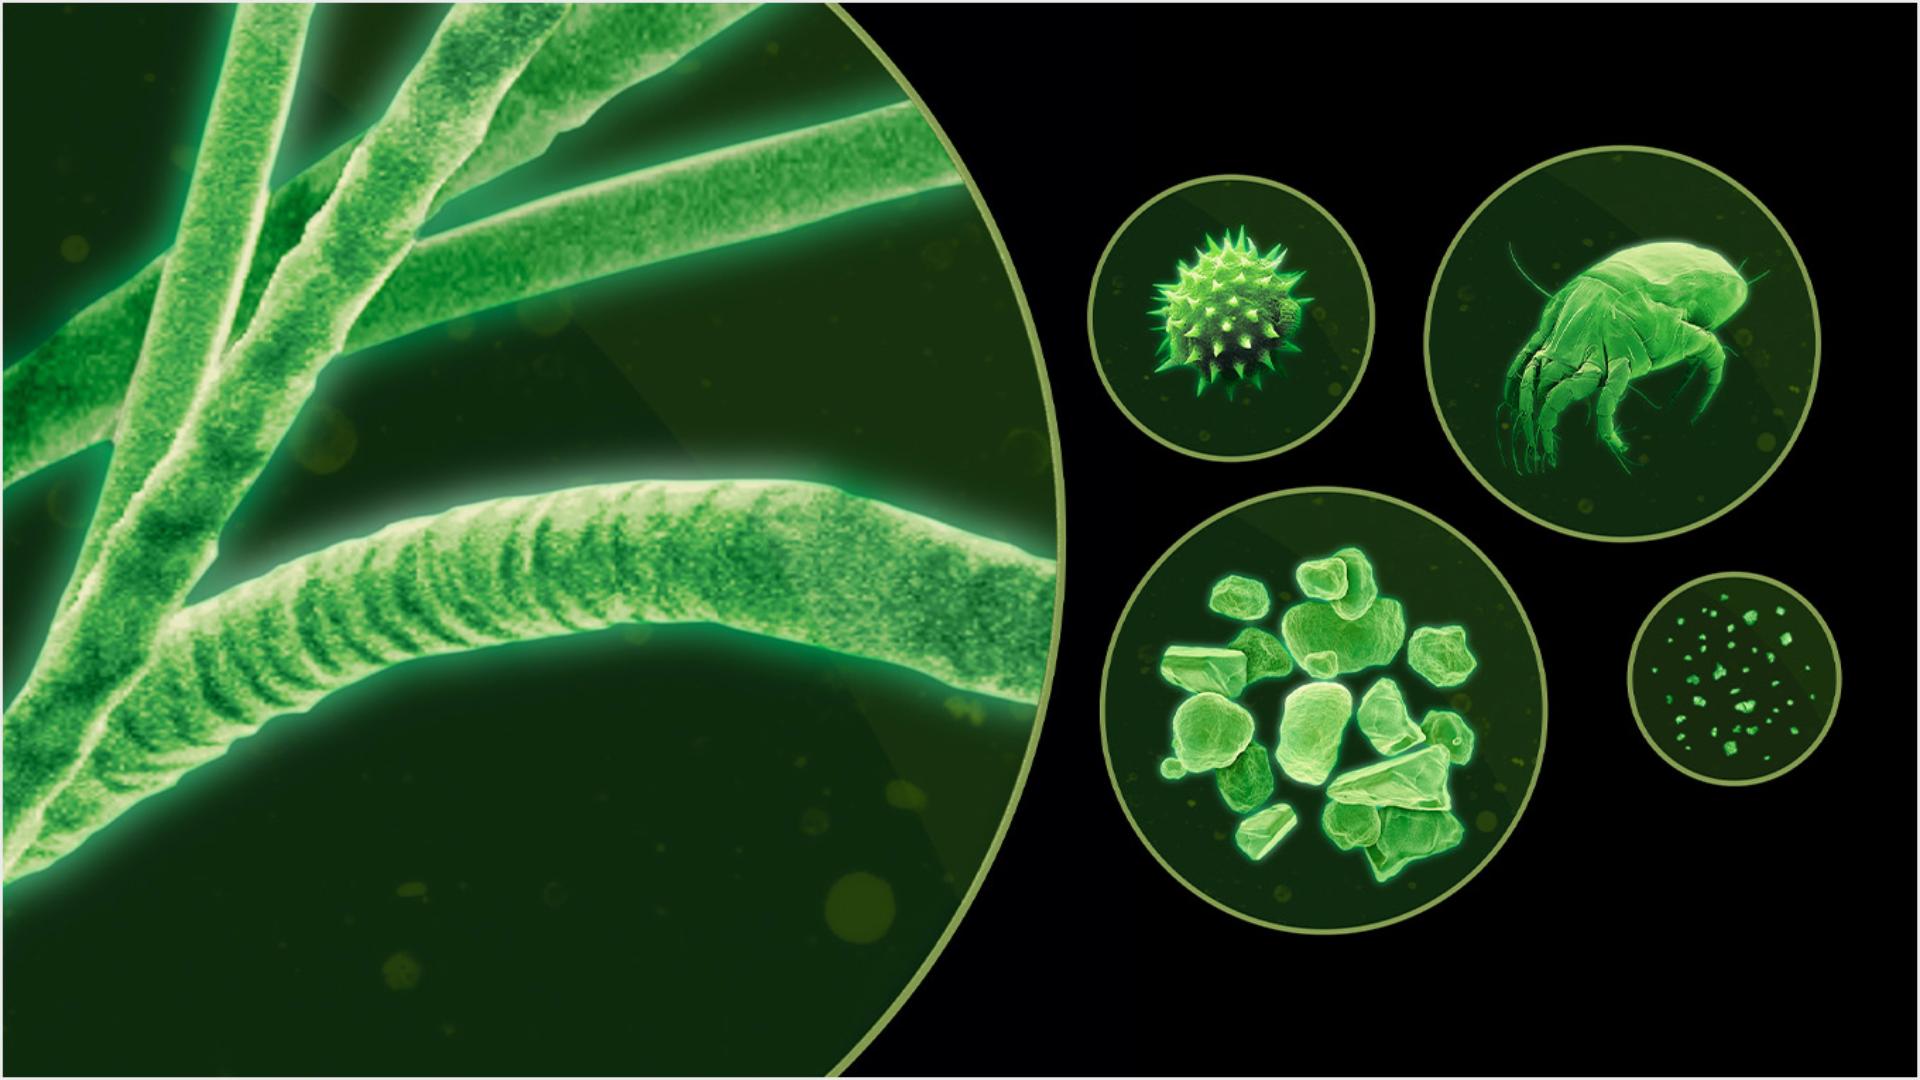 Različite sitne čestice kako se vide pod mikroskopom u zelenoj nijansi.